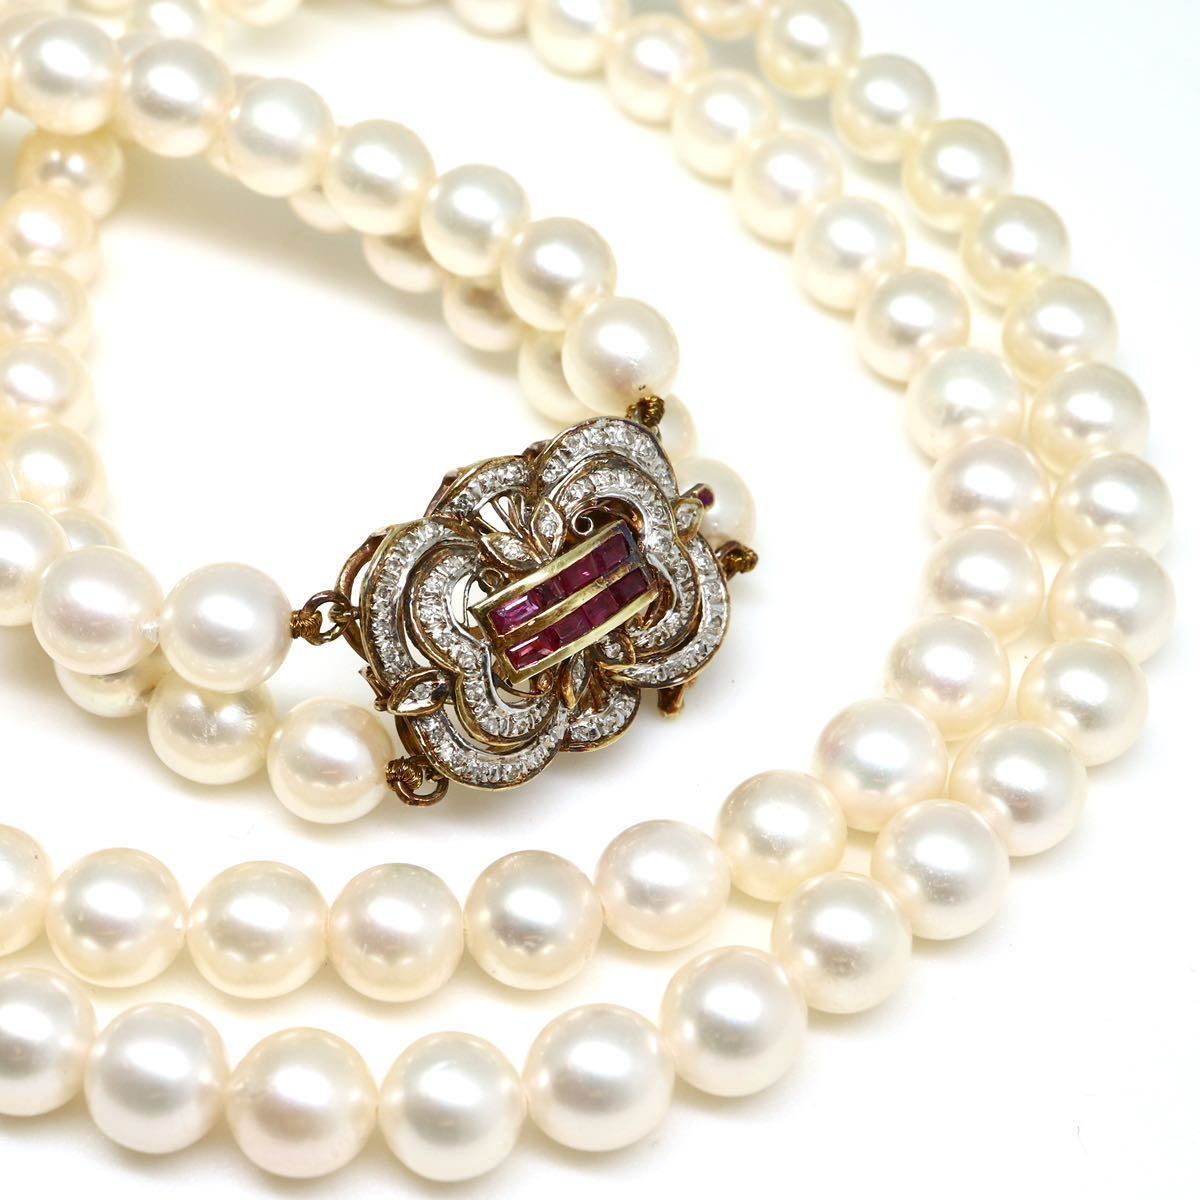 高品質!!天然ルビー&天然ダイヤモンド付き!!◆K14(585) アコヤ本真珠2連ネックレス◆N 38.7g 43.0cm 8.0mm珠 pearl necklace EB5/EG5の画像1